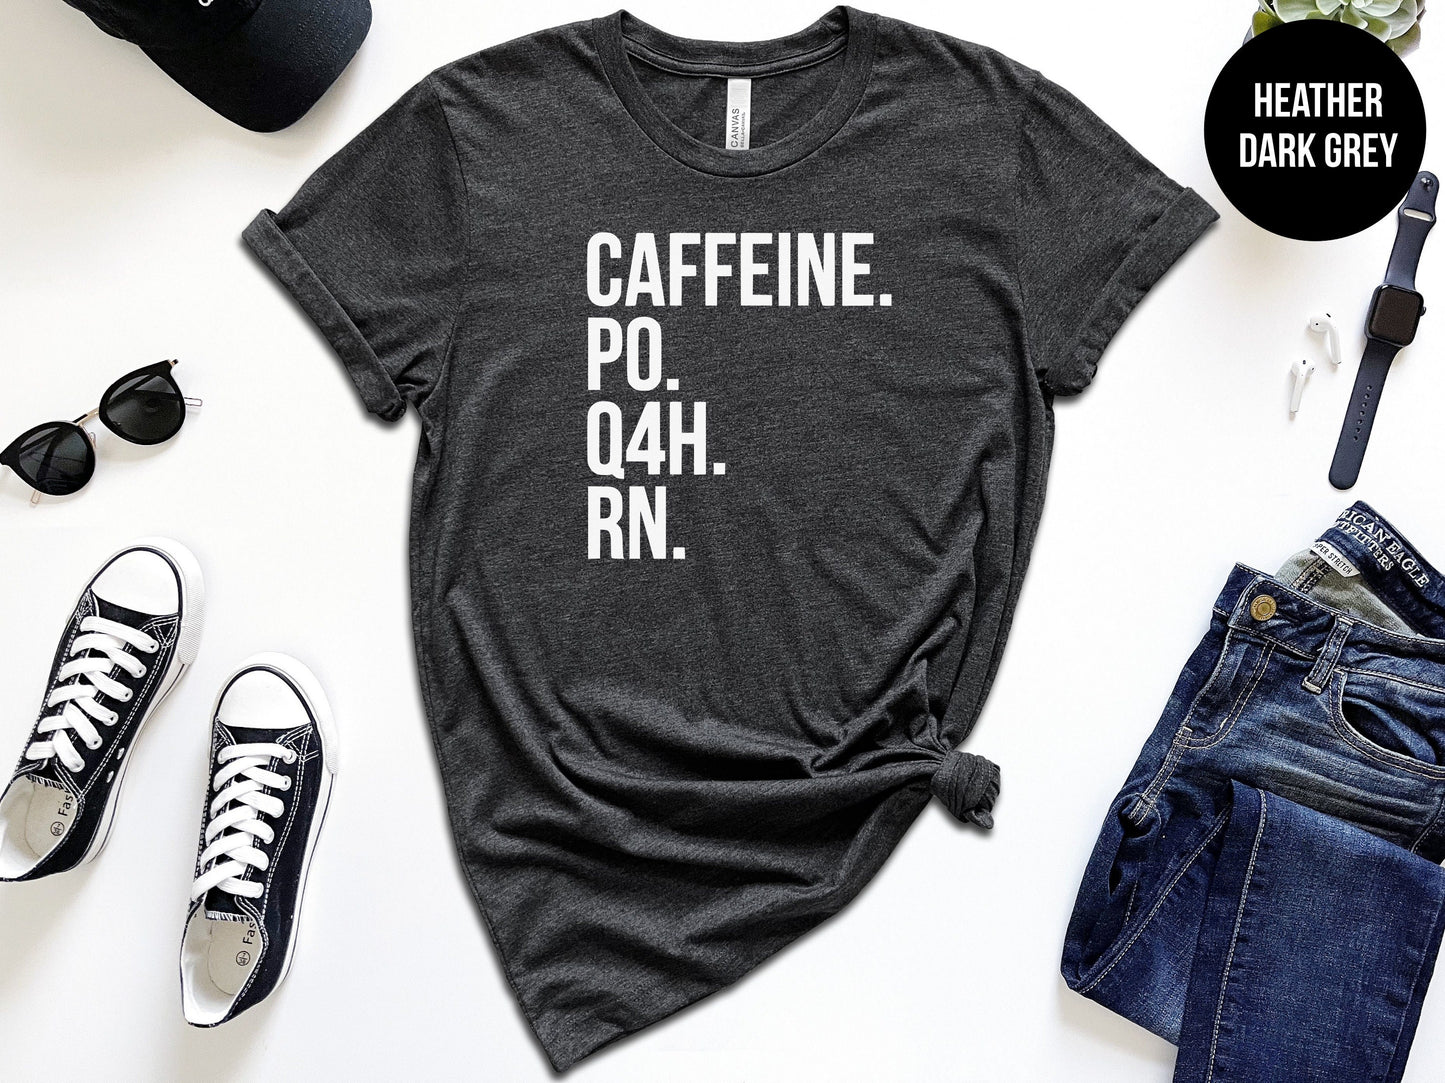 Caffeine. PO. Q4H. RN